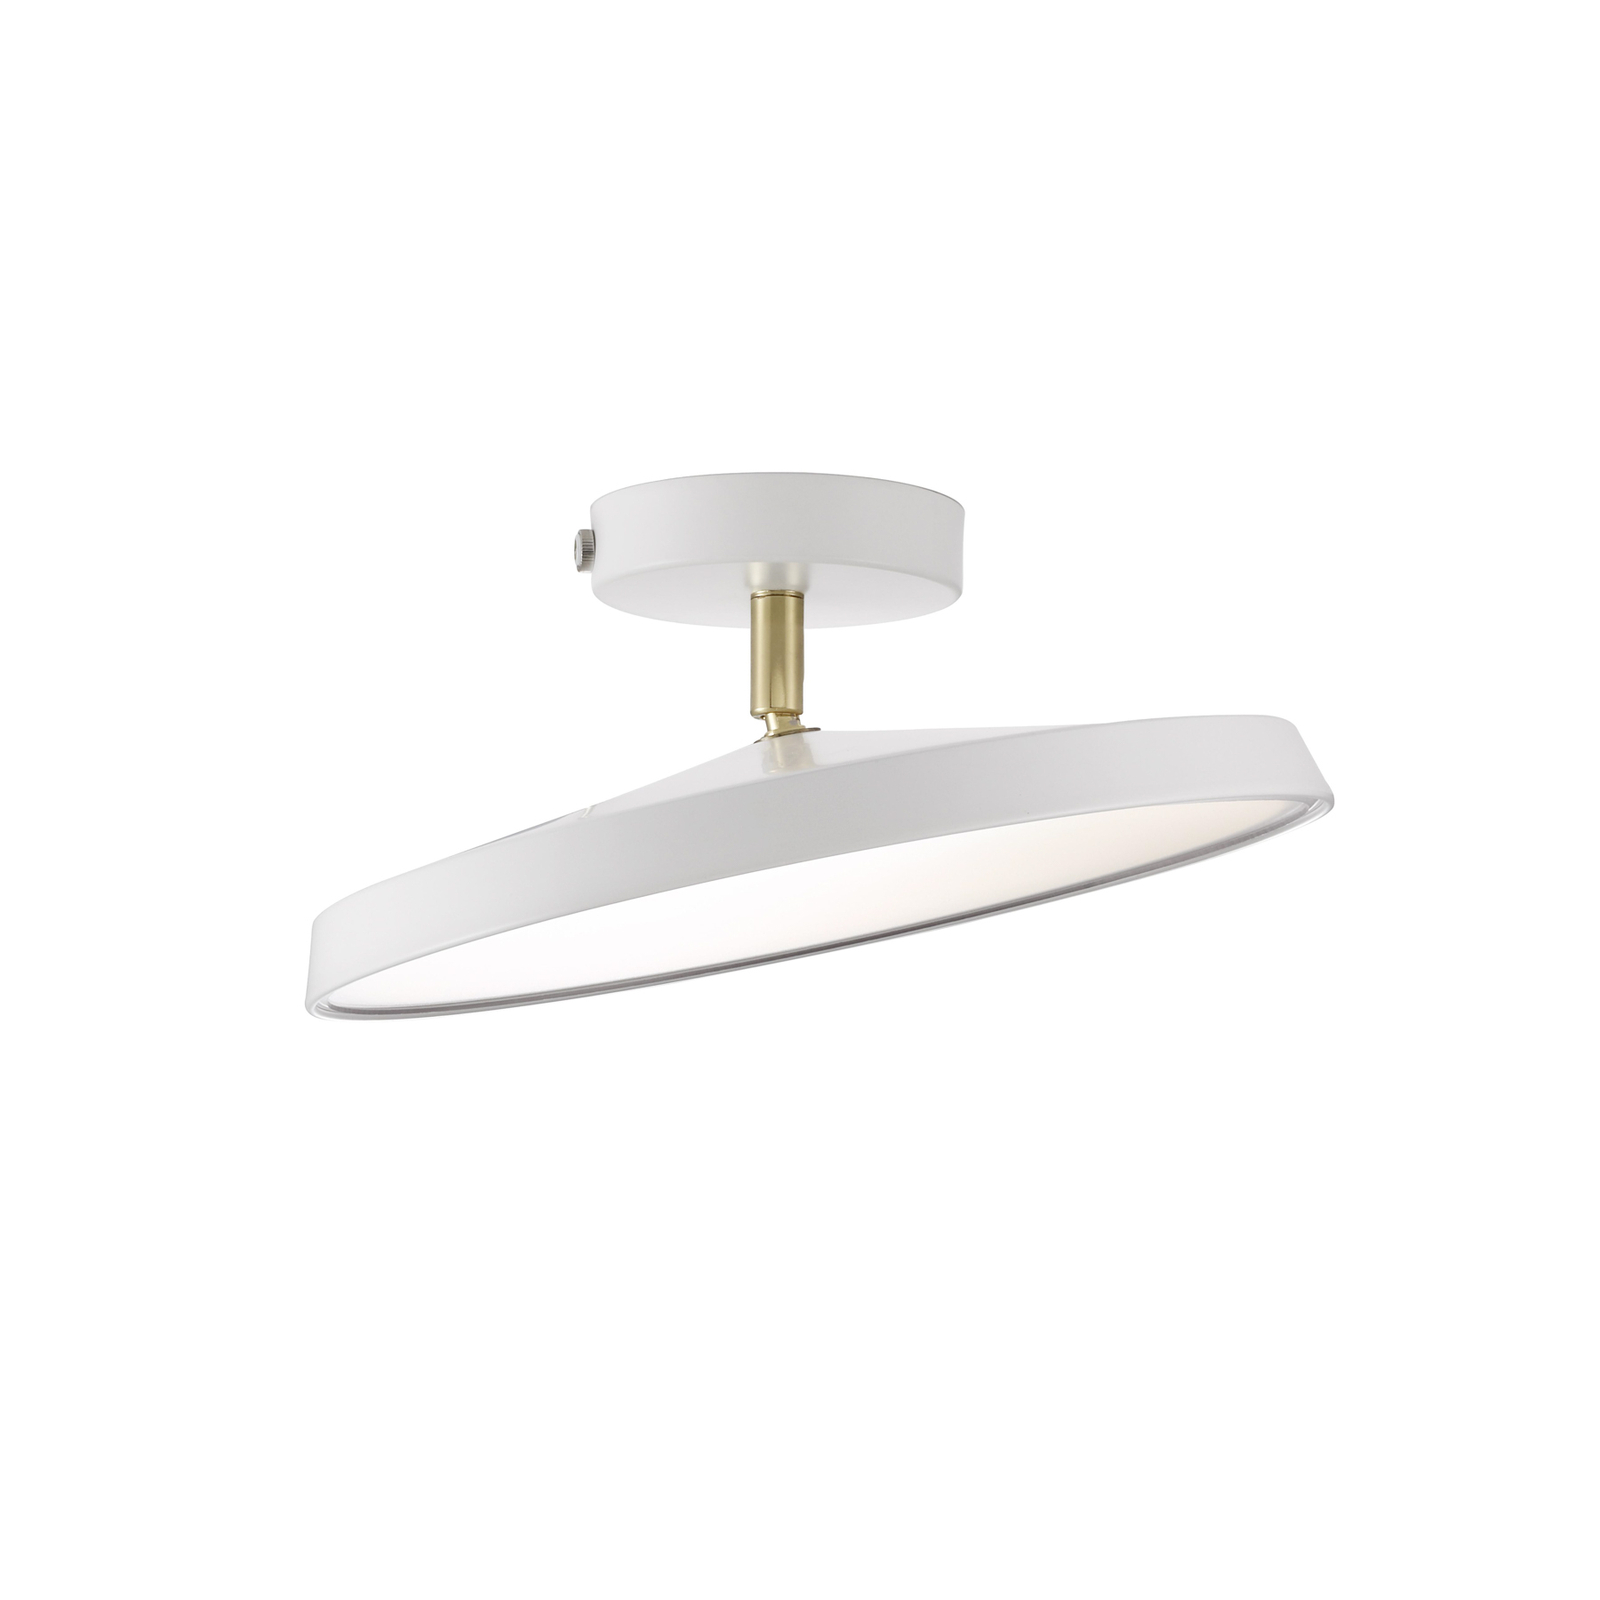 LED stropné svietidlo Kaito 2 Pro, Ø 30 cm, biele, rozstupy